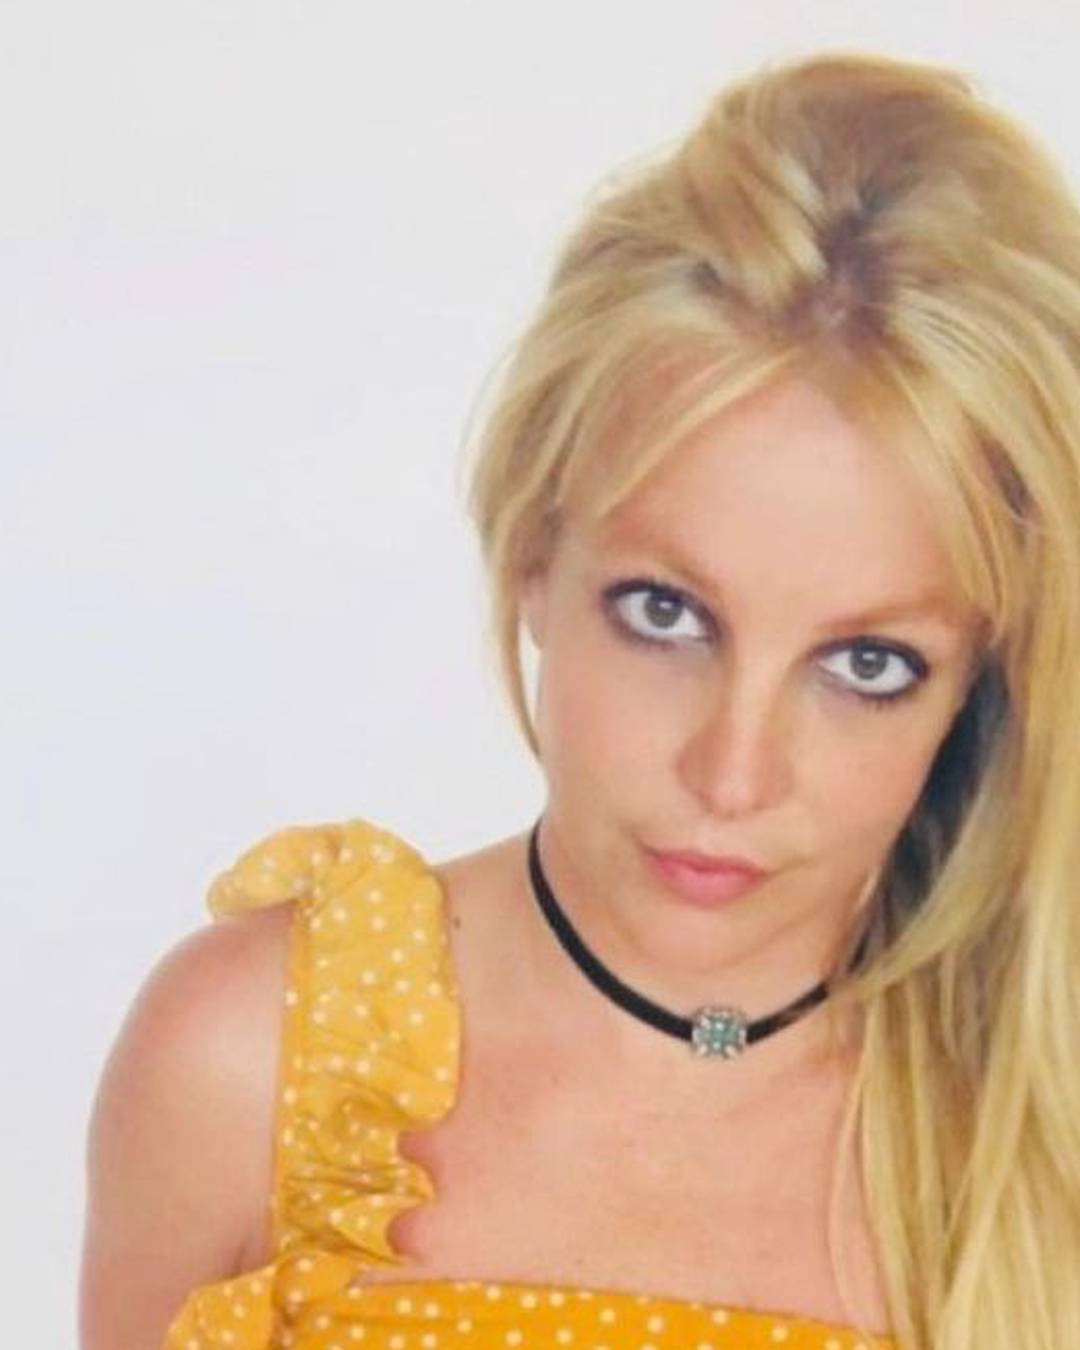 Britney Spears nakon nedavnog 'sloma': Bila sam malo pijana, znam da sam nasmijala ljude